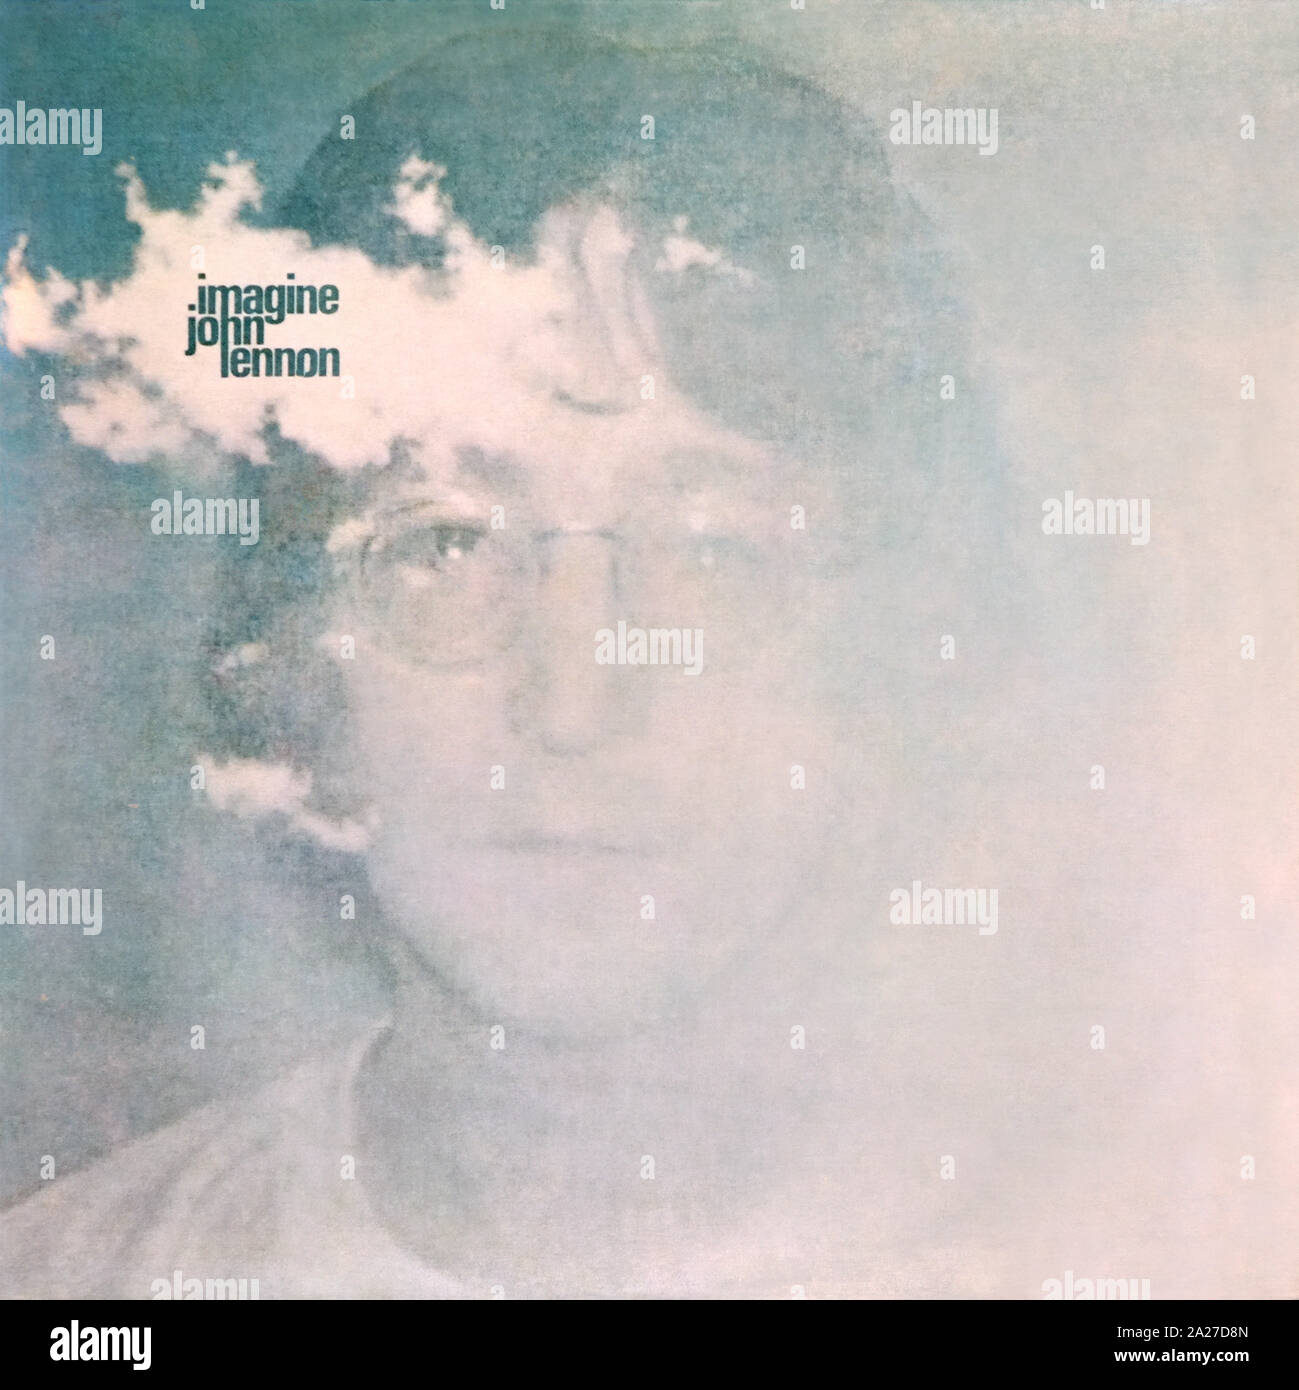 John Lennon - couverture originale de l'album en vinyle - imagine - 1971 Banque D'Images